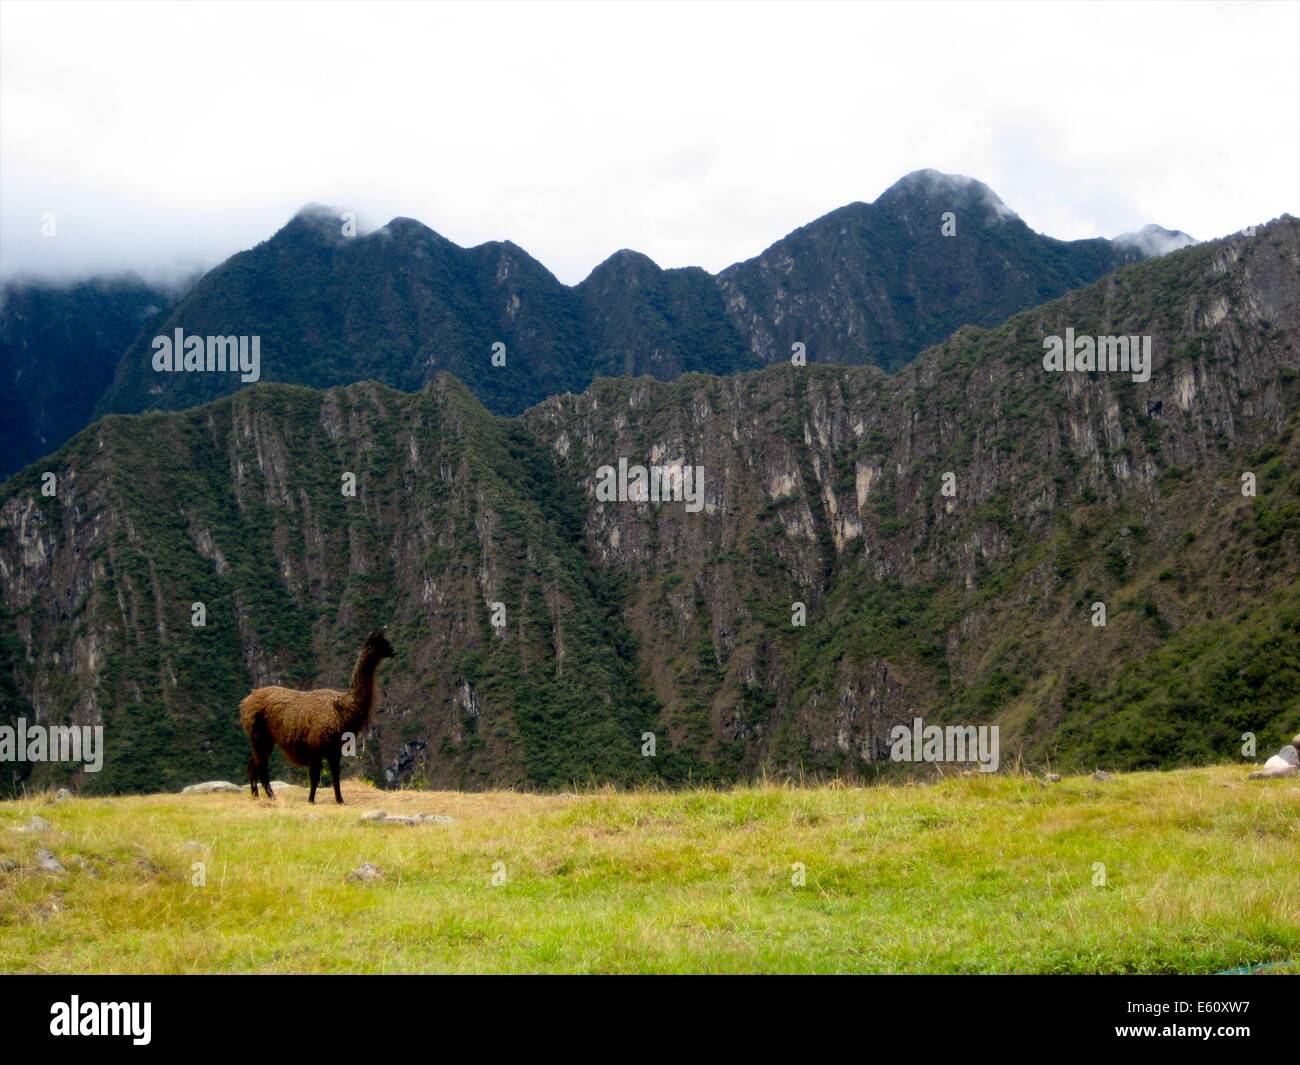 A lone Llama grazes at the Inca site of Machu Picchu, near Cusco, Peru Stock Photo